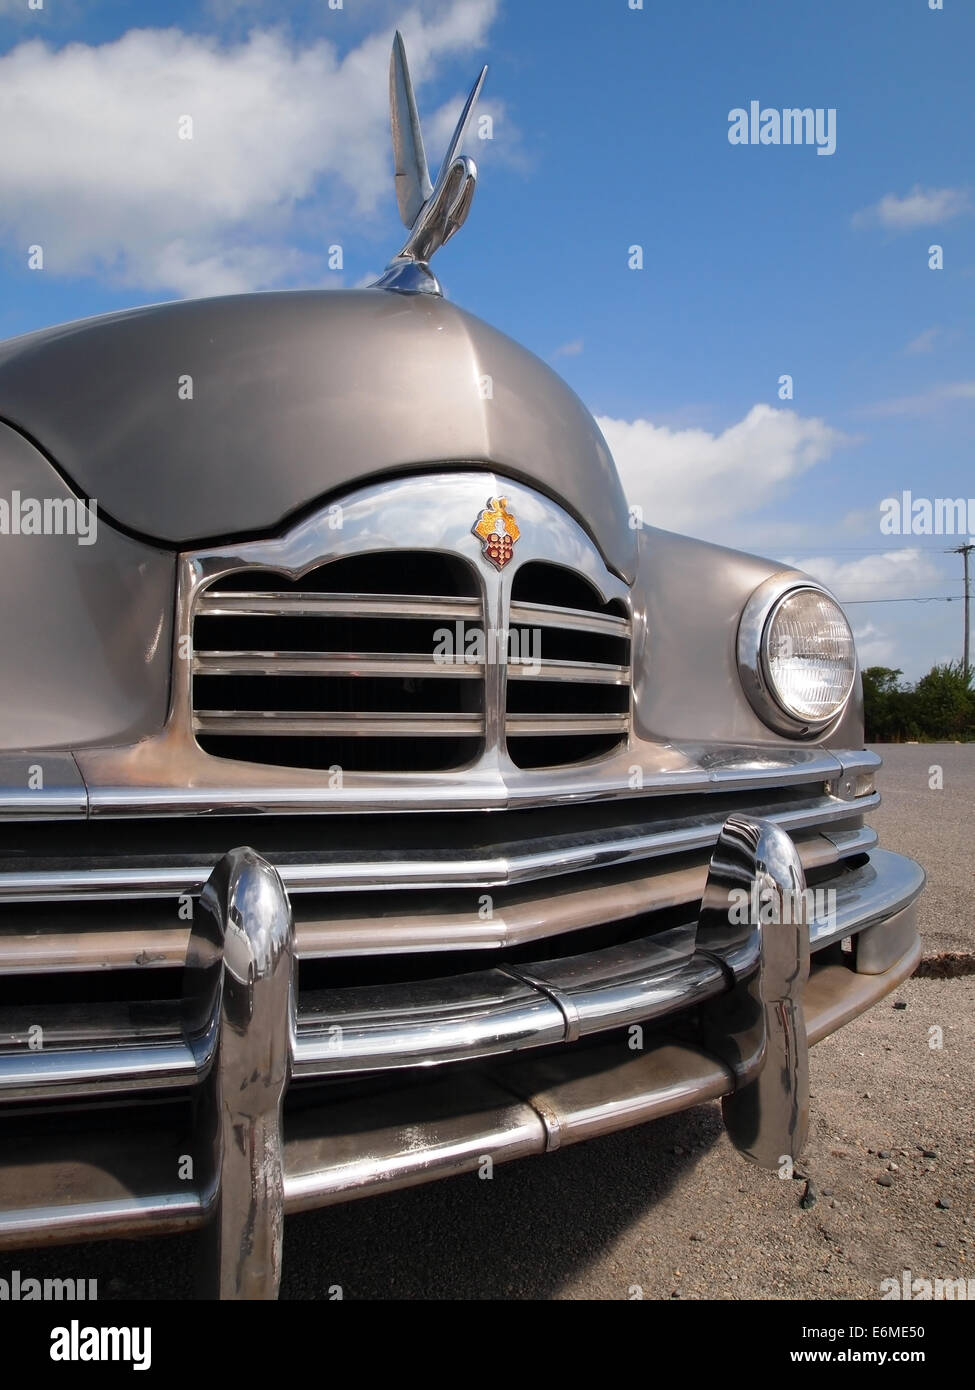 FENWICK ISLAND, NEW YORK - 23 août 2014 : un millésime Packard automobile avec swan hood ornament est exposée dans un parking. Banque D'Images